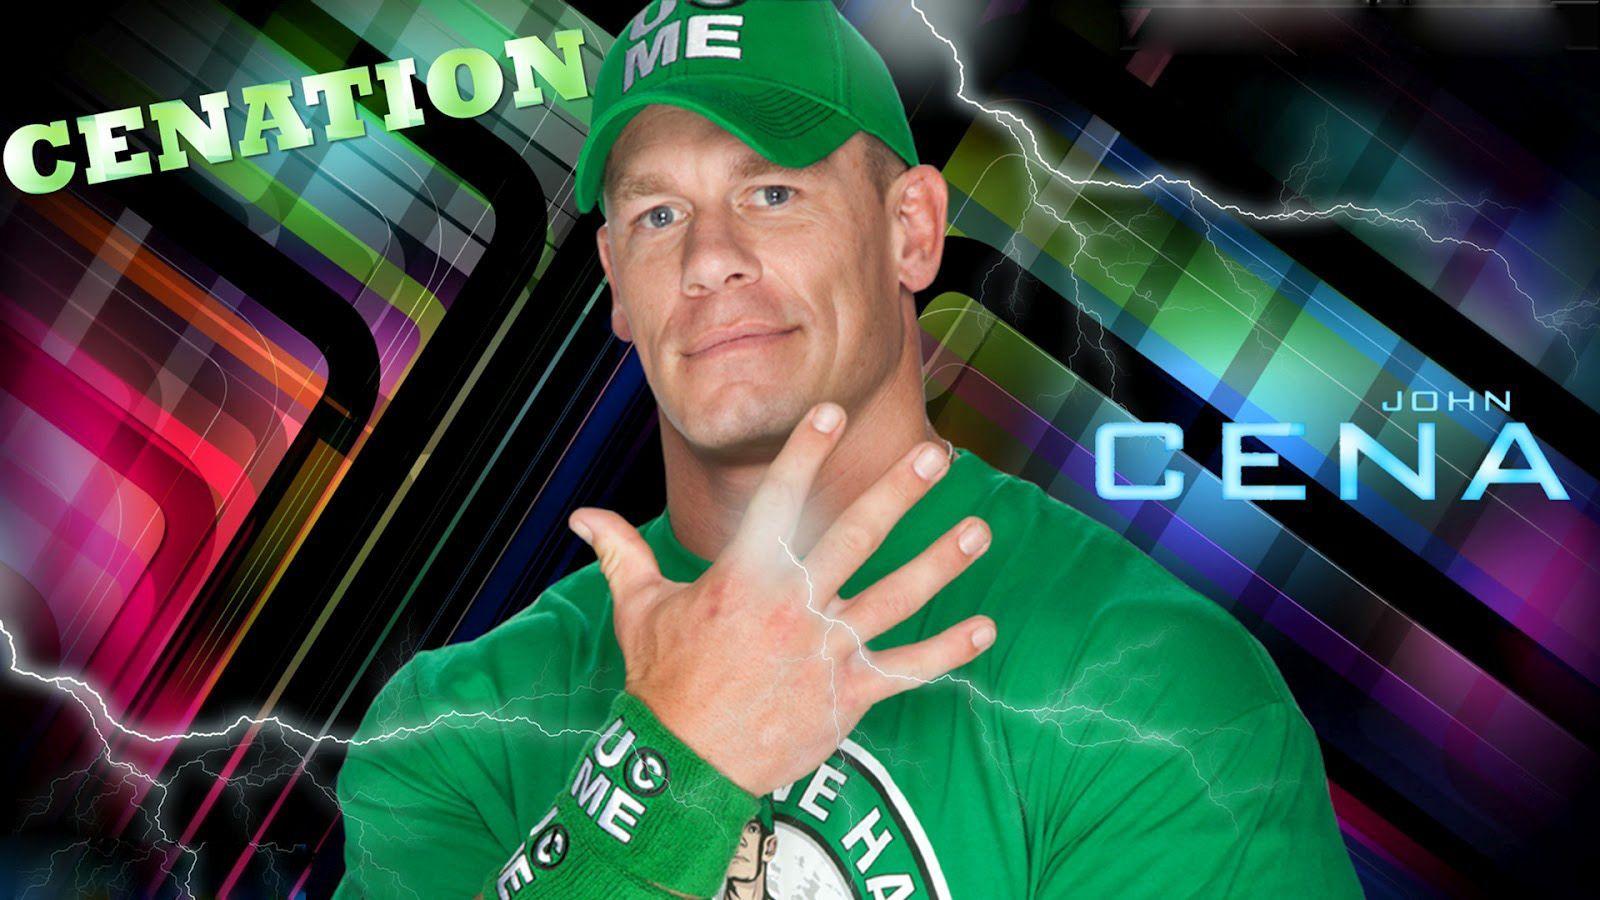 ALL SPORTS PLAYERS: Wwe John Cena New HD Wallpaper 2013